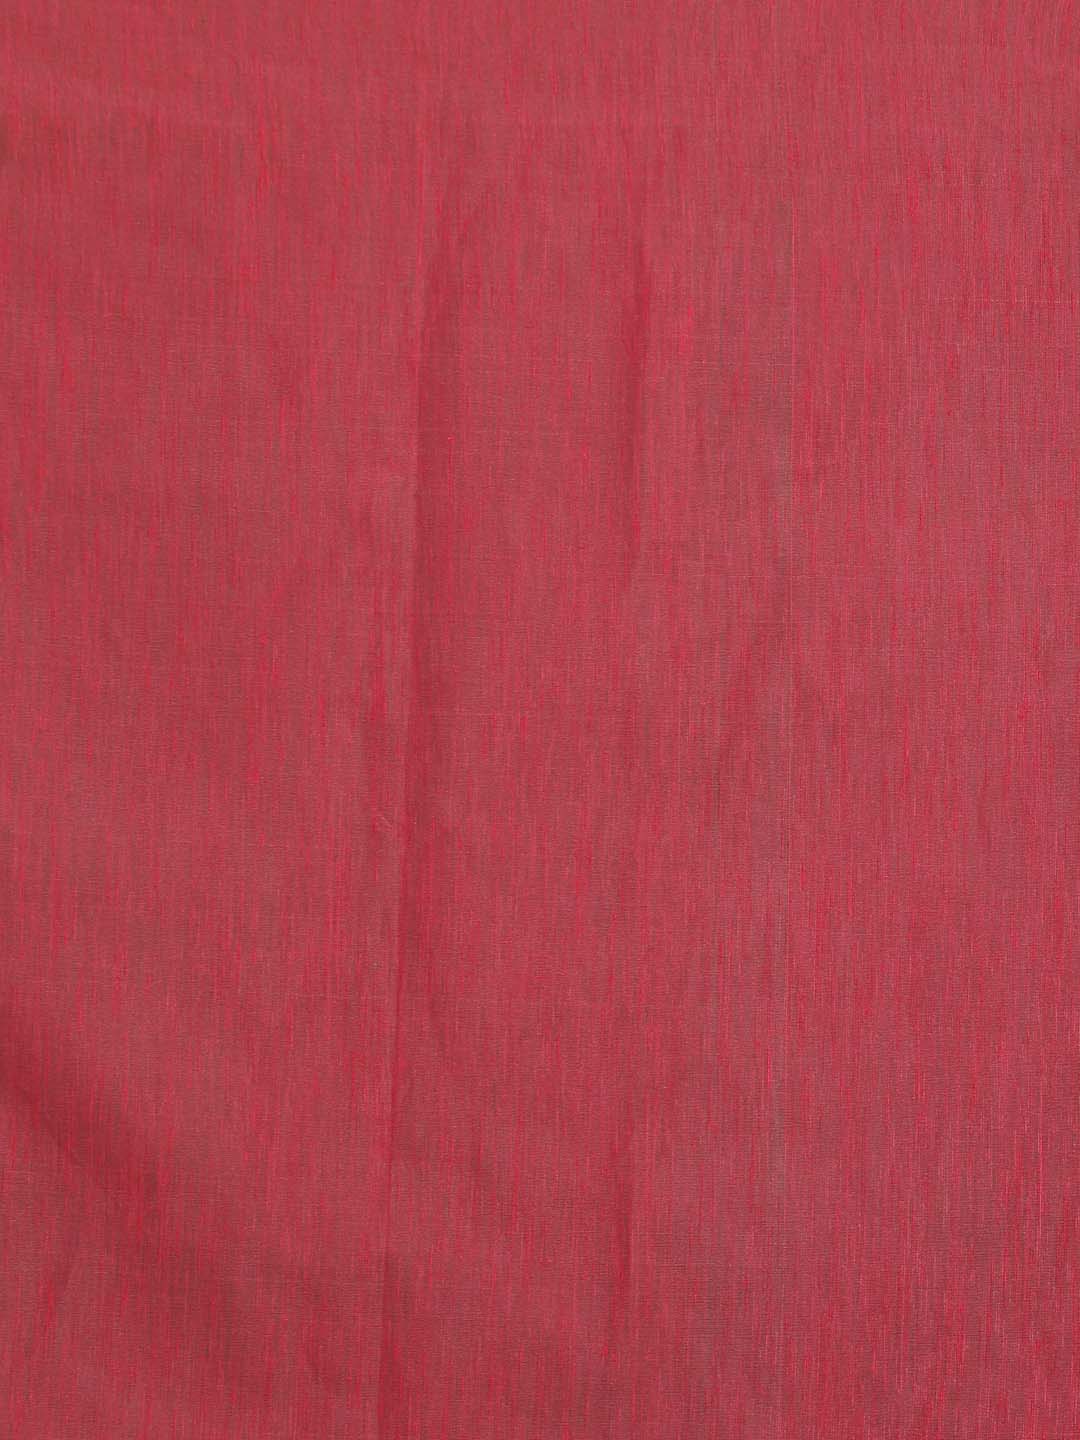 Indethnic Banarasi Magenta Solid Daily Wear Saree - Saree Detail View